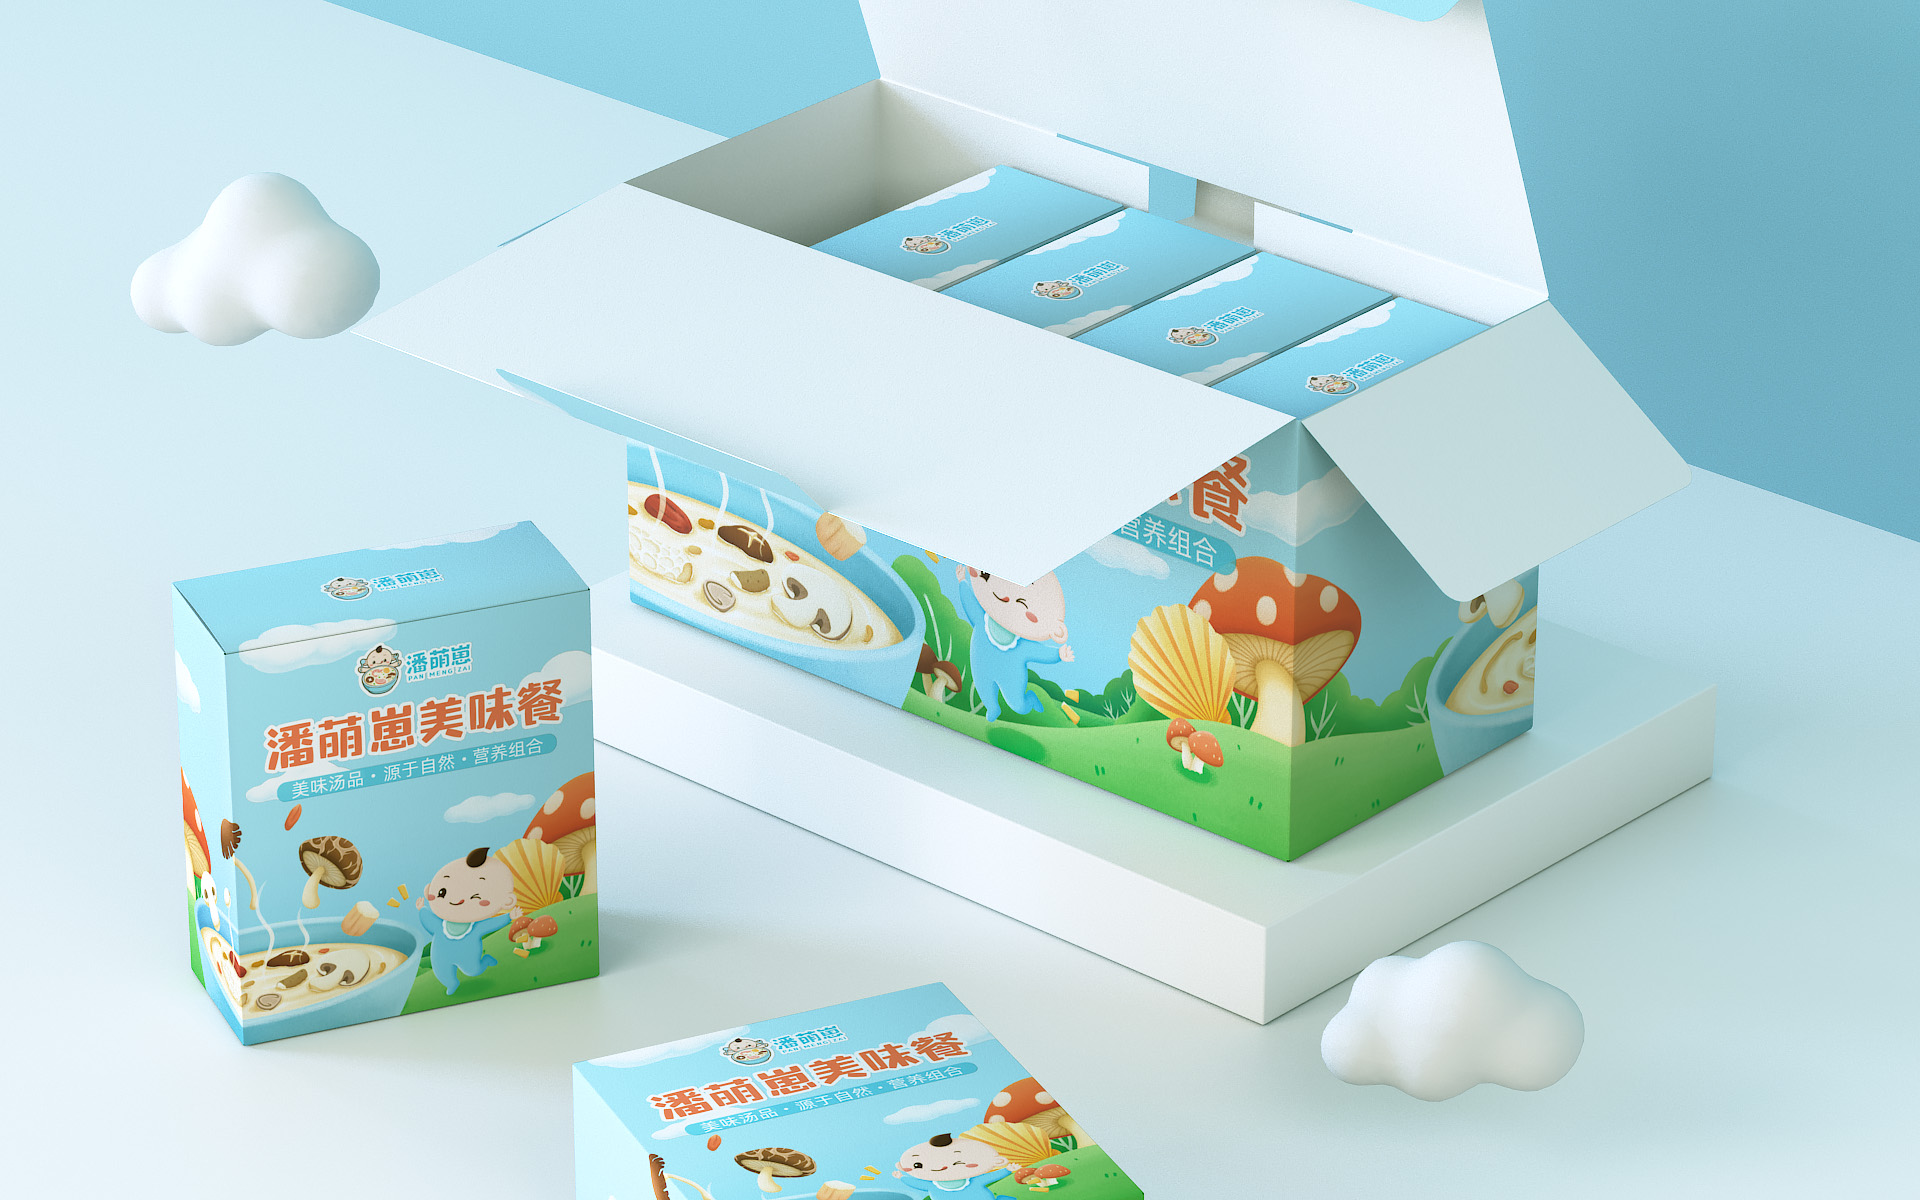 潘萌崽营养餐-儿童辅食产品的品牌及包装设计 产品包装设计 第19张